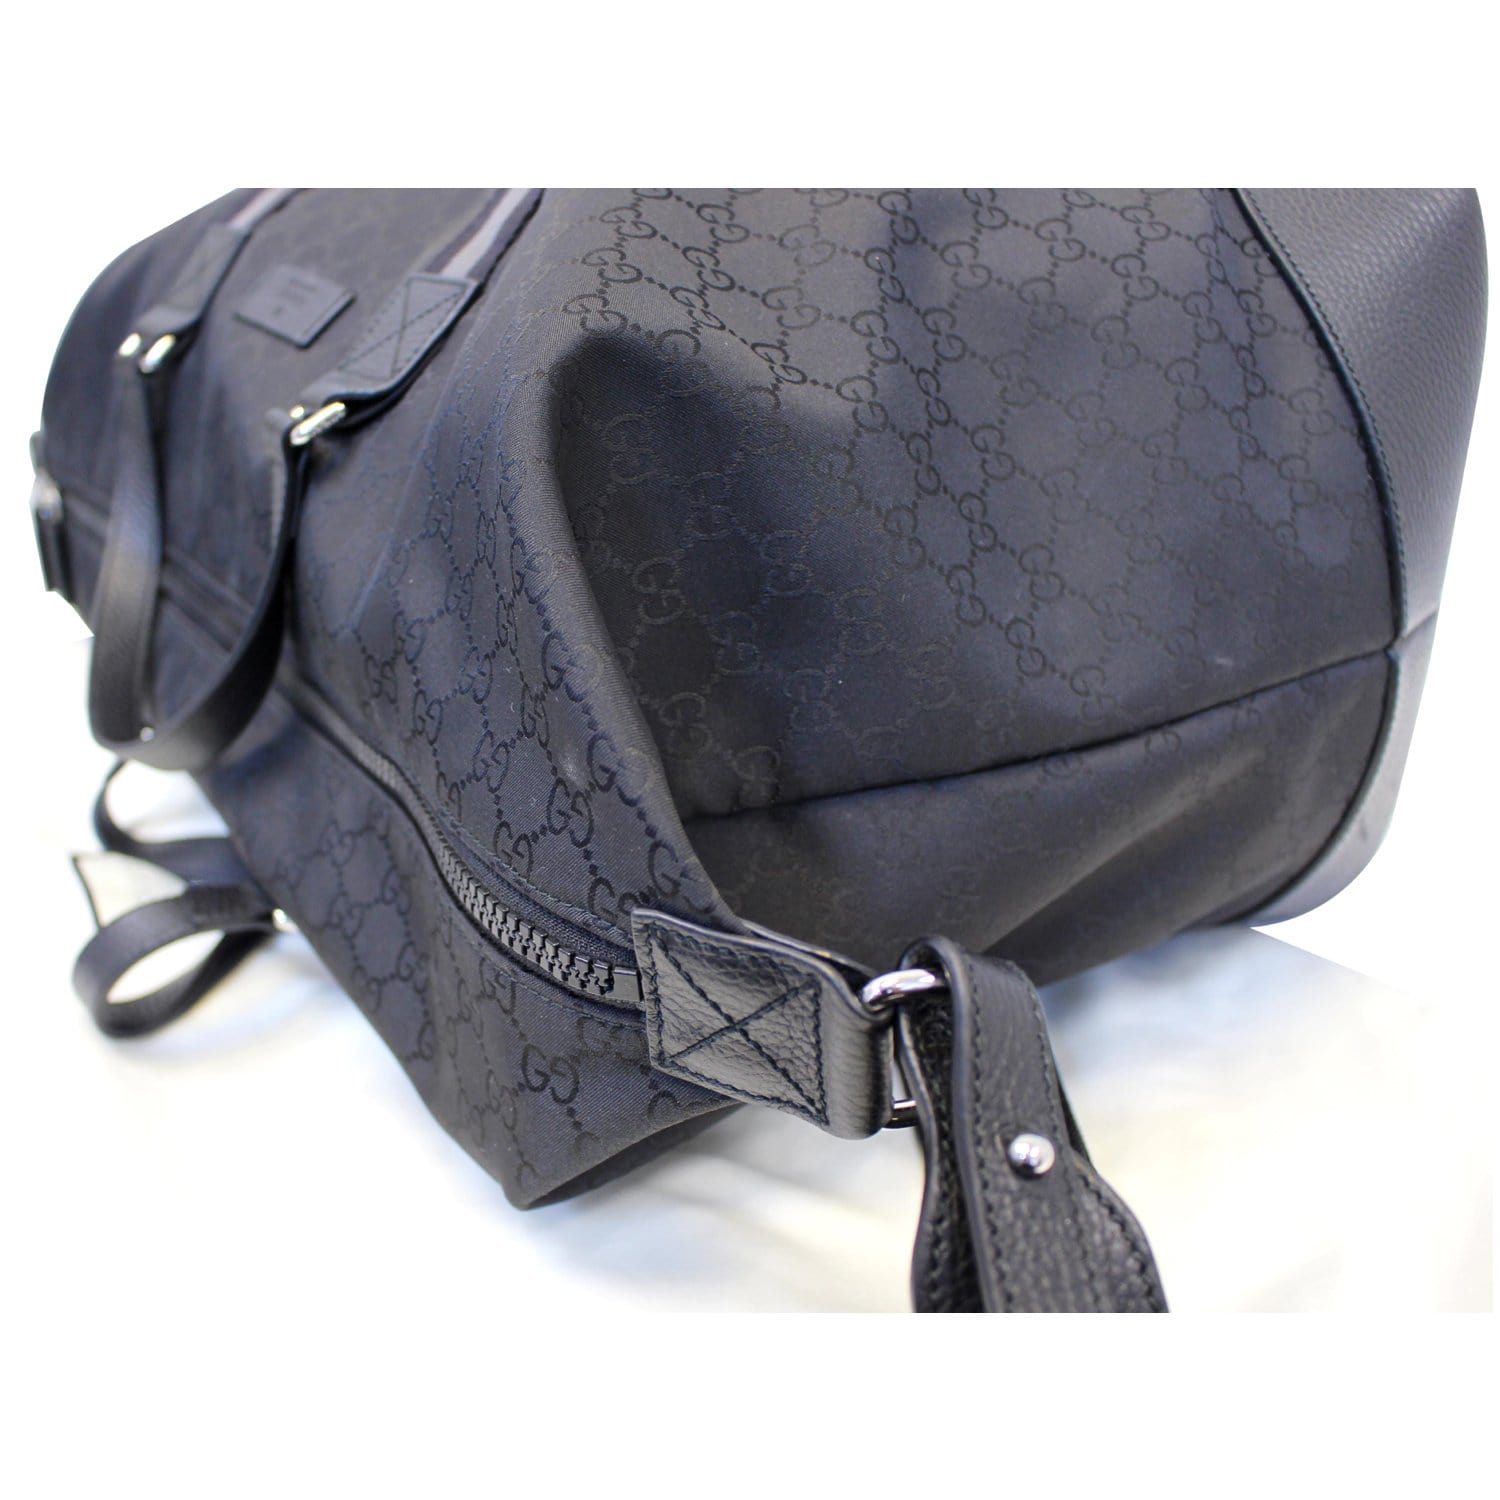 Gucci GG Web Nylon Monogram XL Duffle Bag Black 449180